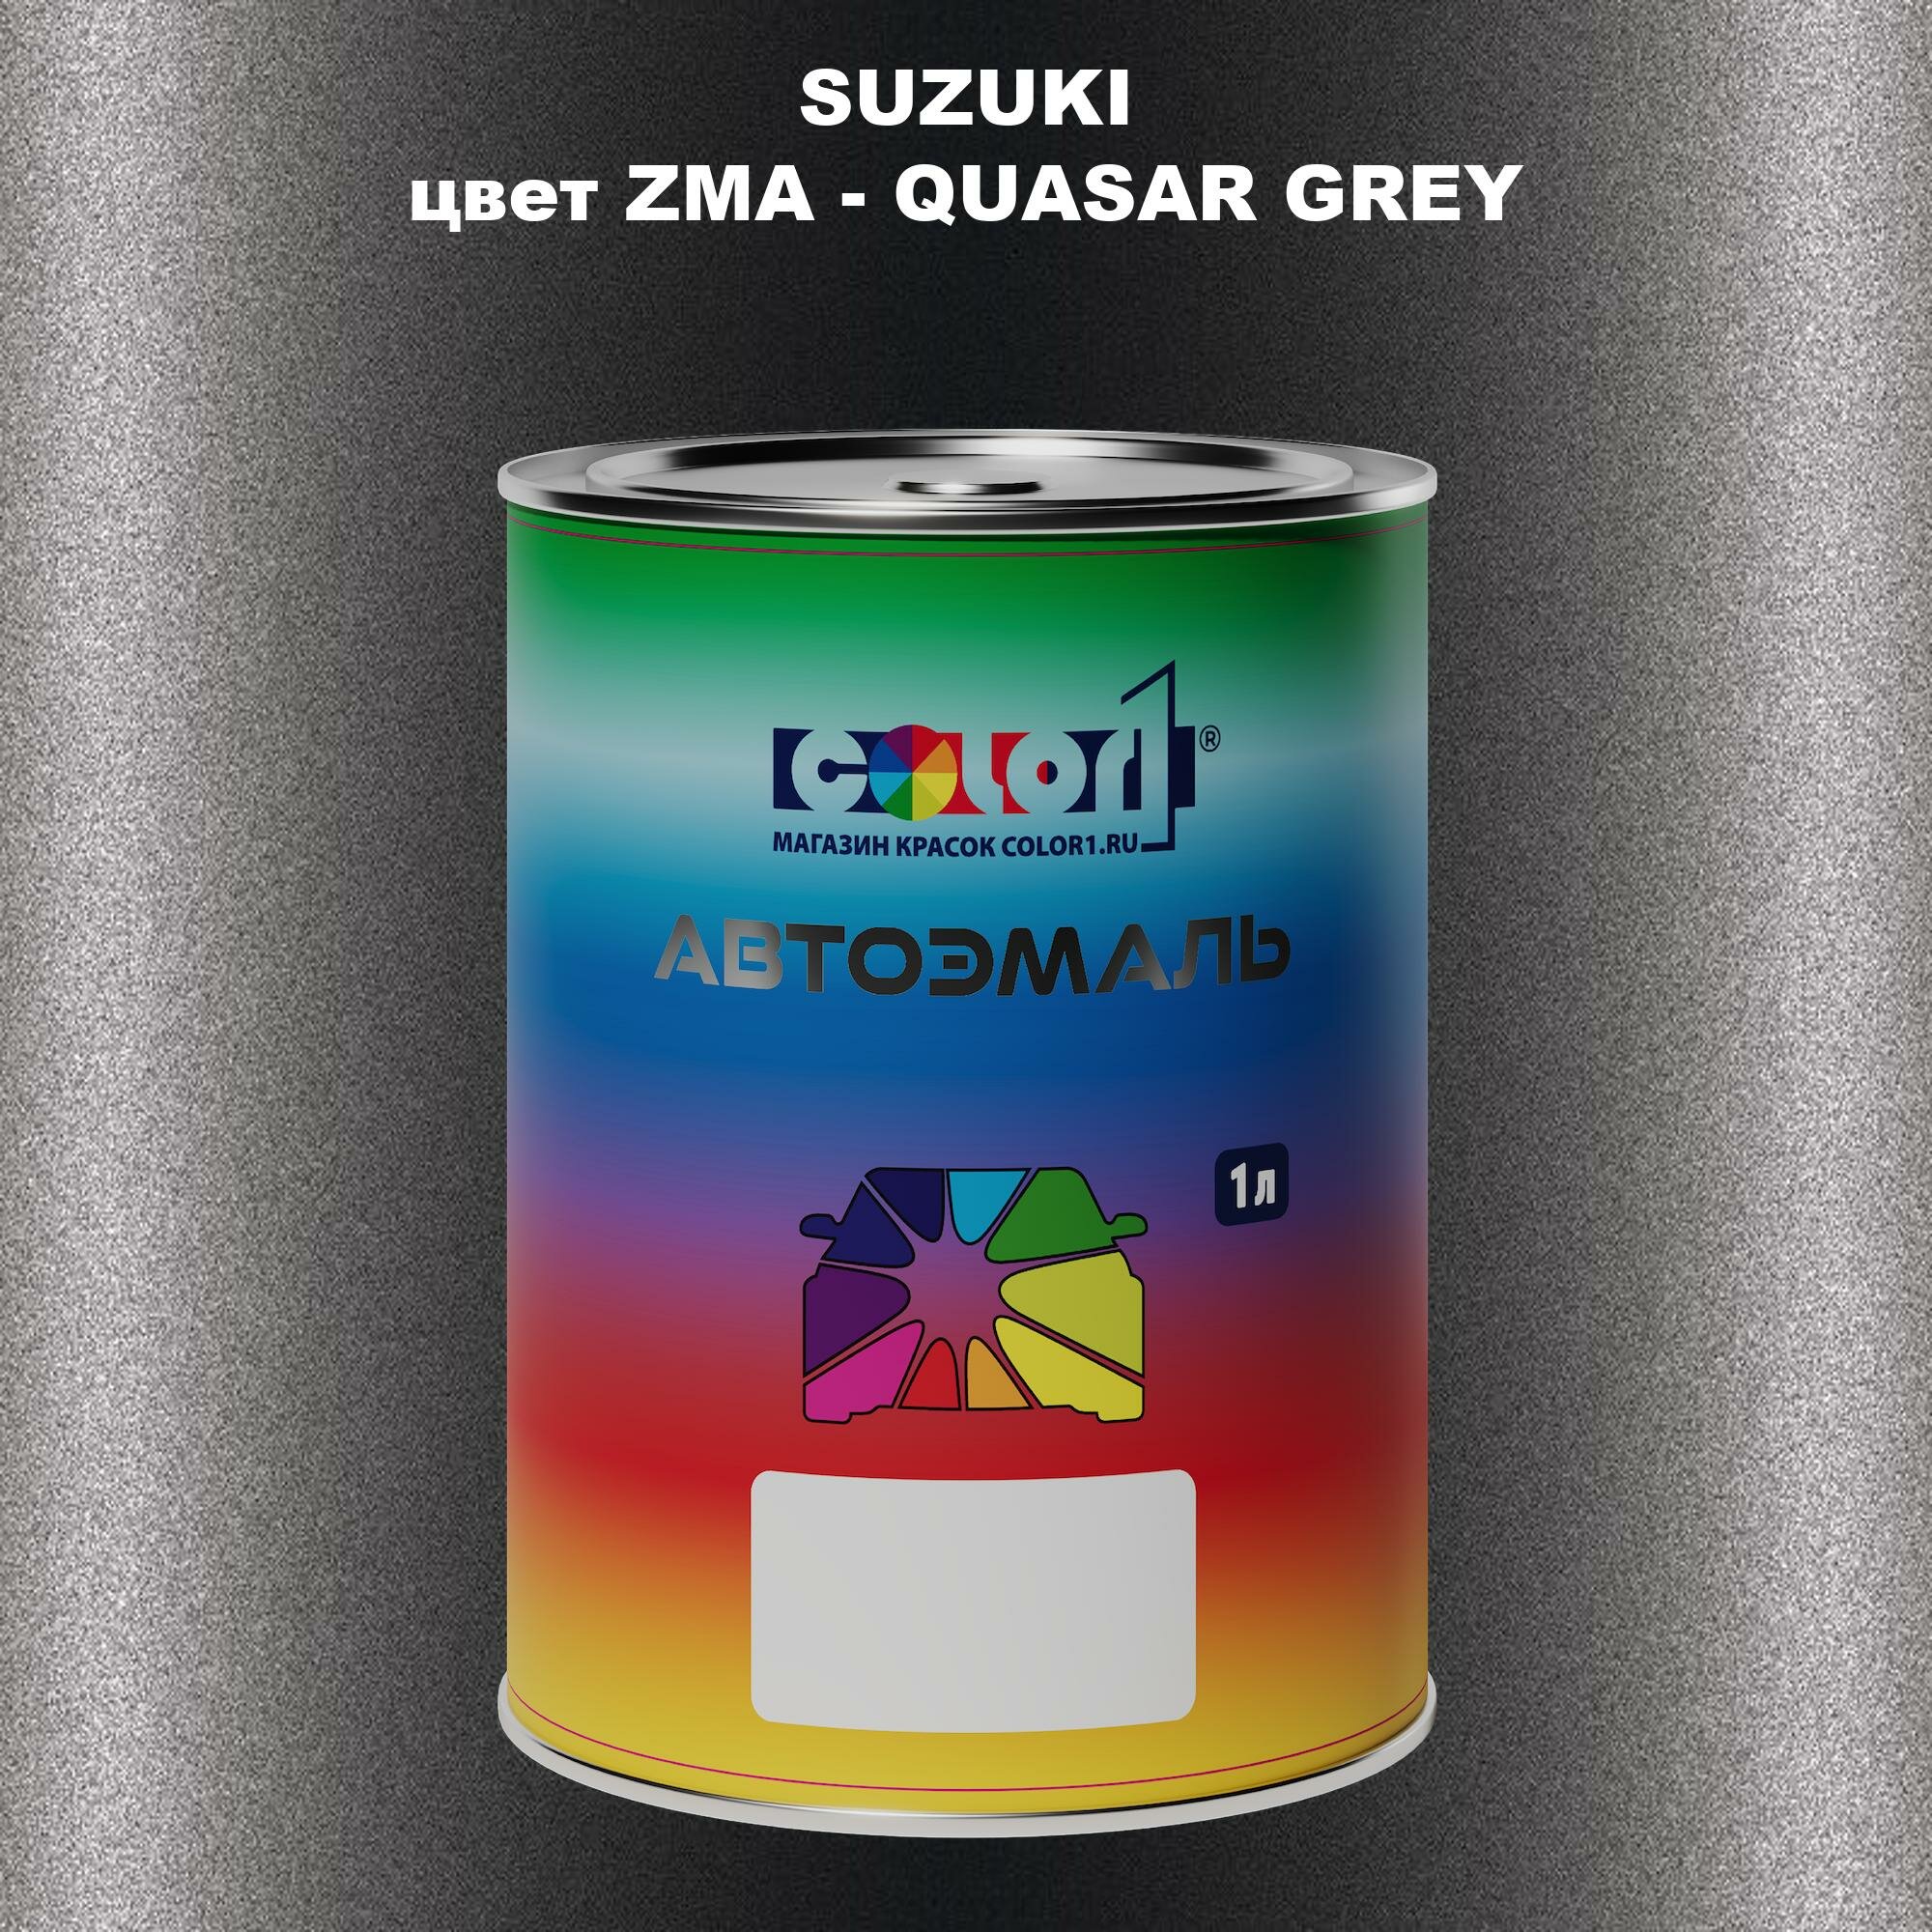 Автомобильная краска COLOR1 для SUZUKI цвет ZMA - QUASAR GREY